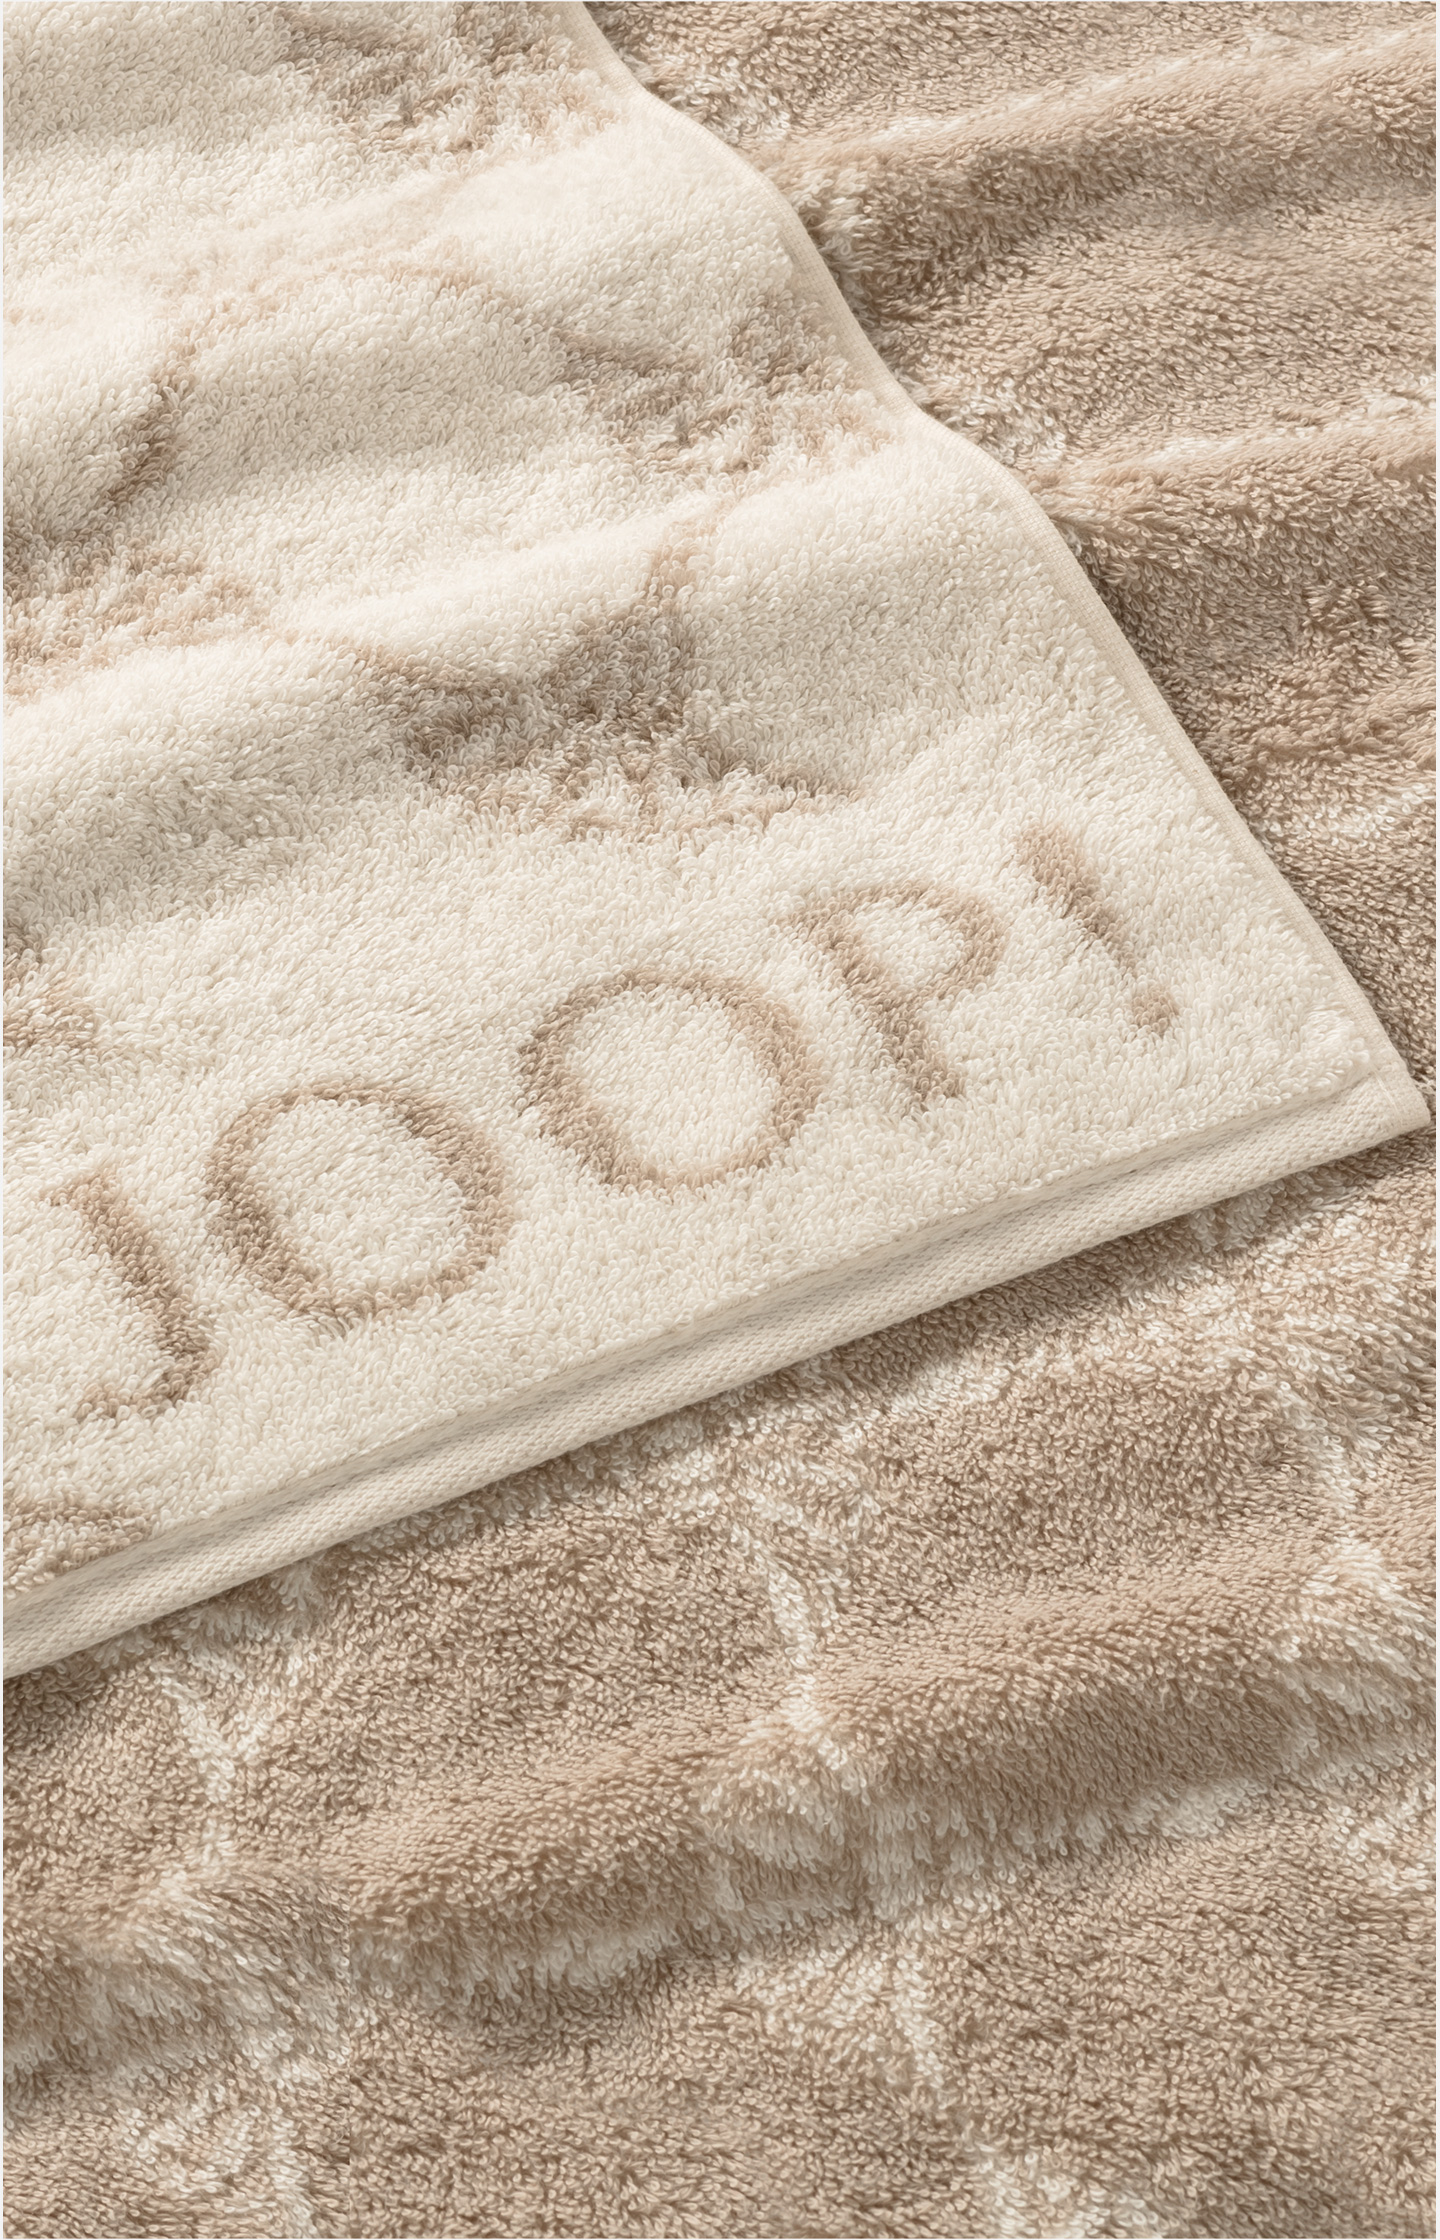 JOOP! CLASSIC CORNFLOWER Towel in Cream - in the JOOP! Online Shop